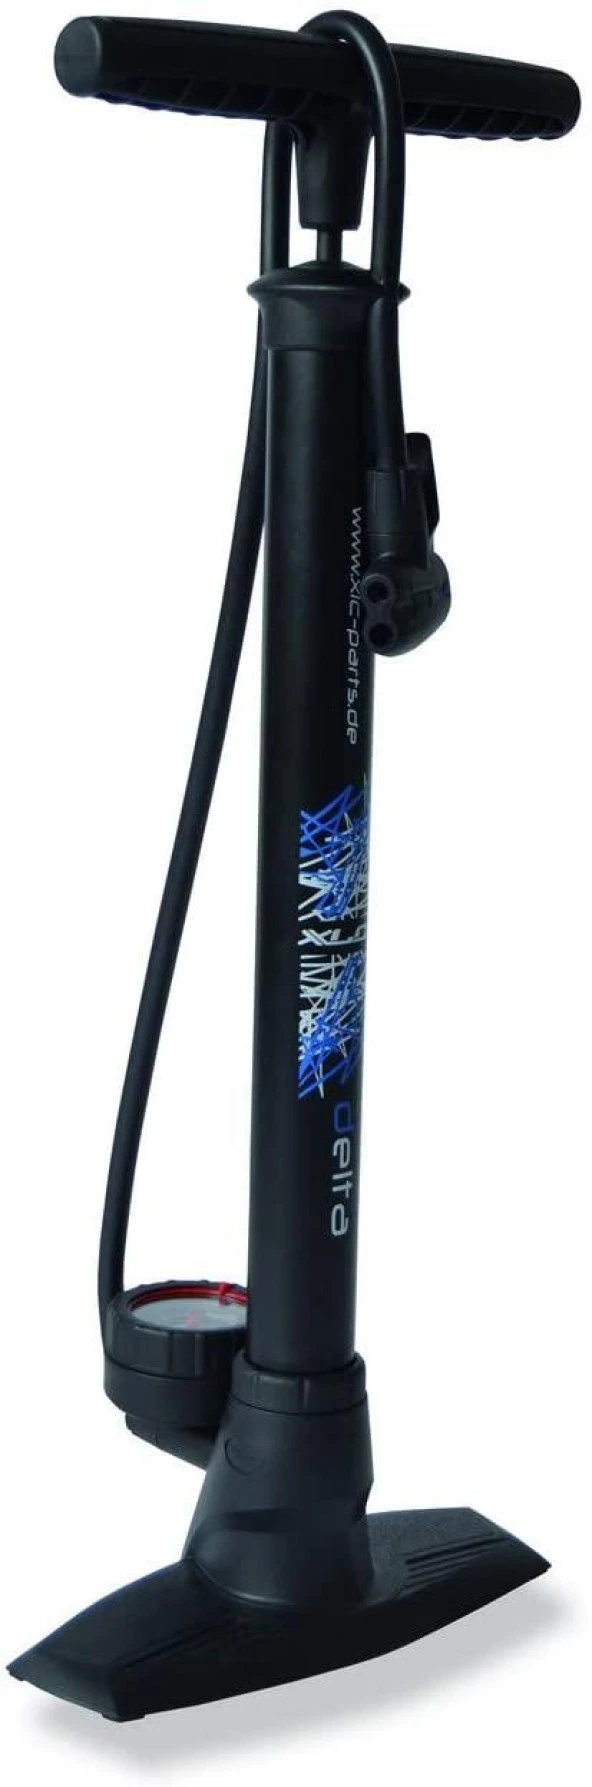 XLC Bisiklet Tekerlek Pompası Ayaklı Delta PU-SO4 Siyah 11 Bar 2501954900